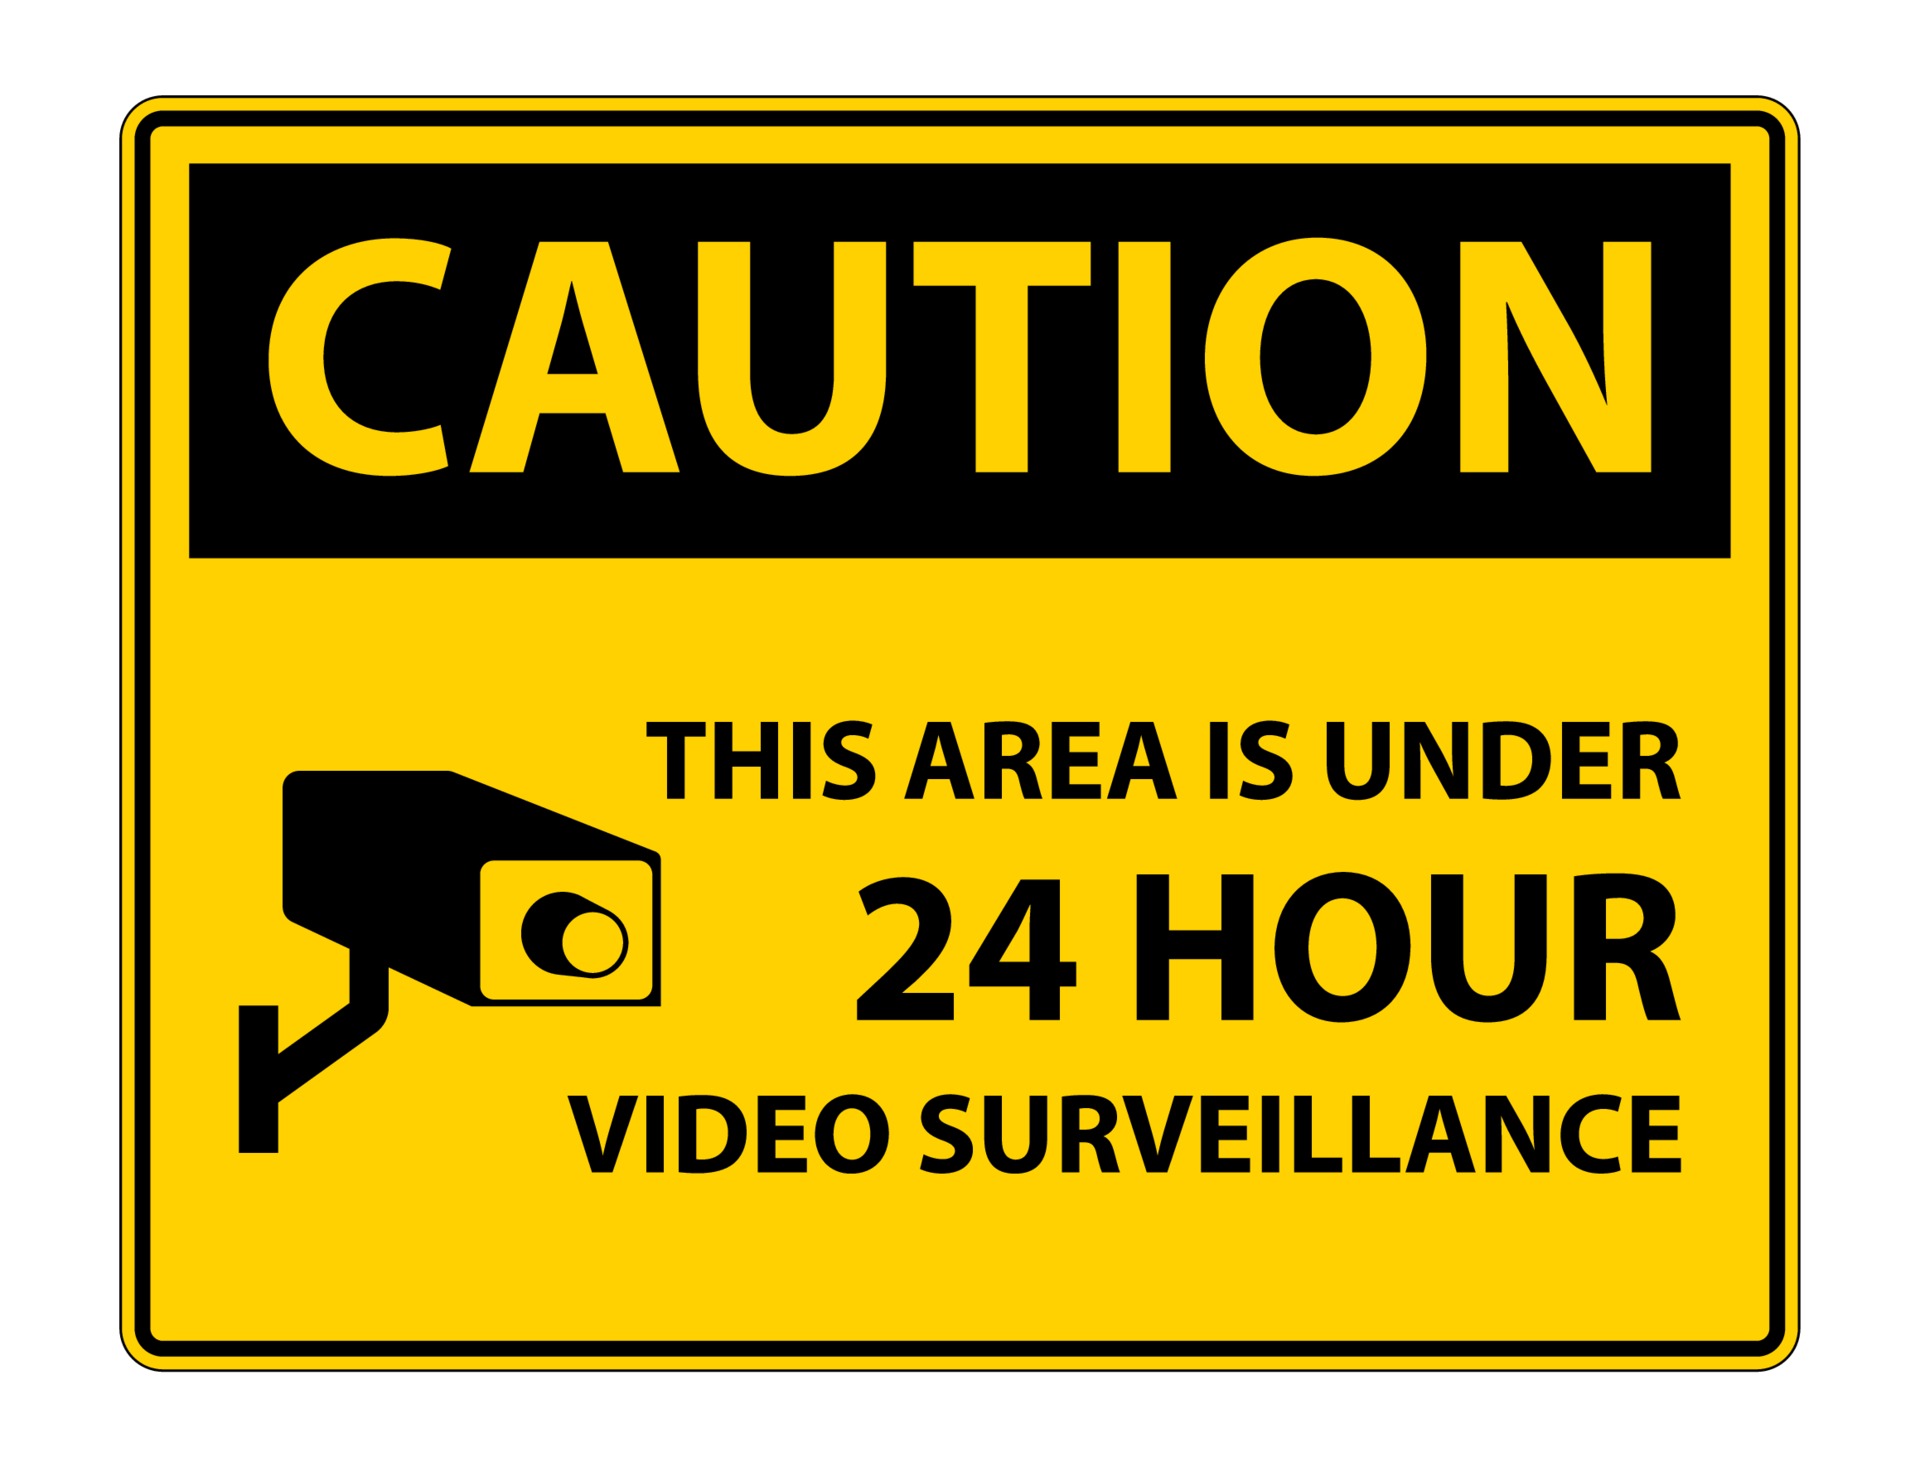 Bạn muốn tăng cường an ninh cho gia đình hay công ty của mình? Đừng bỏ qua biểu tượng giám sát video 24 giờ tuyệt vời trong hình ảnh. Nhấn vào để tìm hiểu thêm về cách ứng dụng biểu tượng này để tăng cường an ninh.